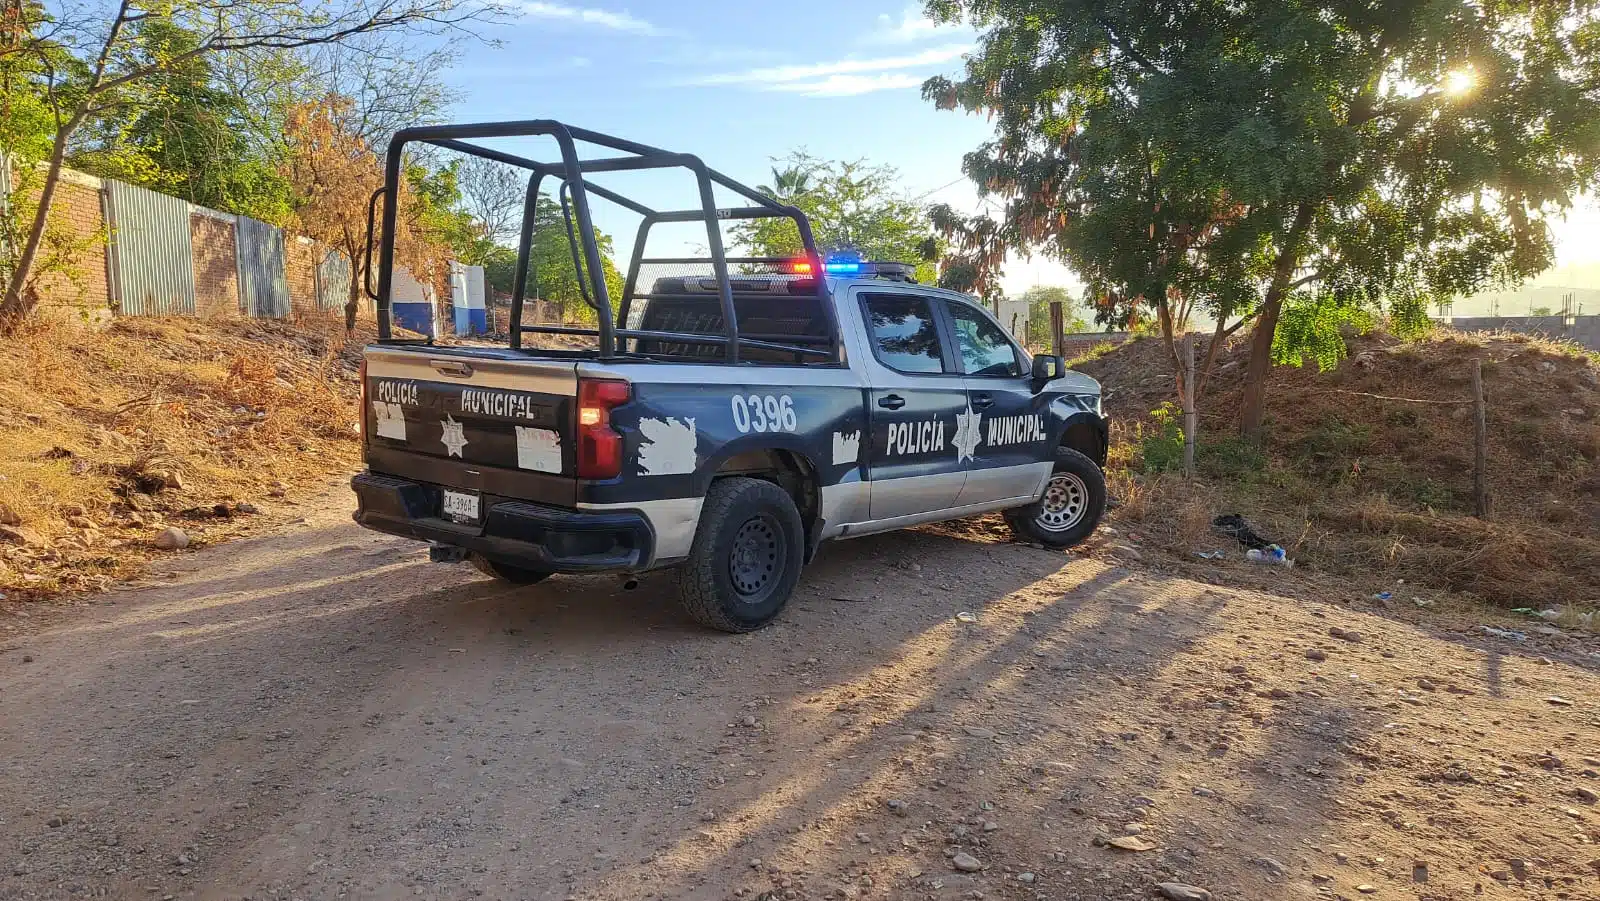 Policía Municipal de Culiacán en el lugar donde encontraron a Armando envuelto en una cobija